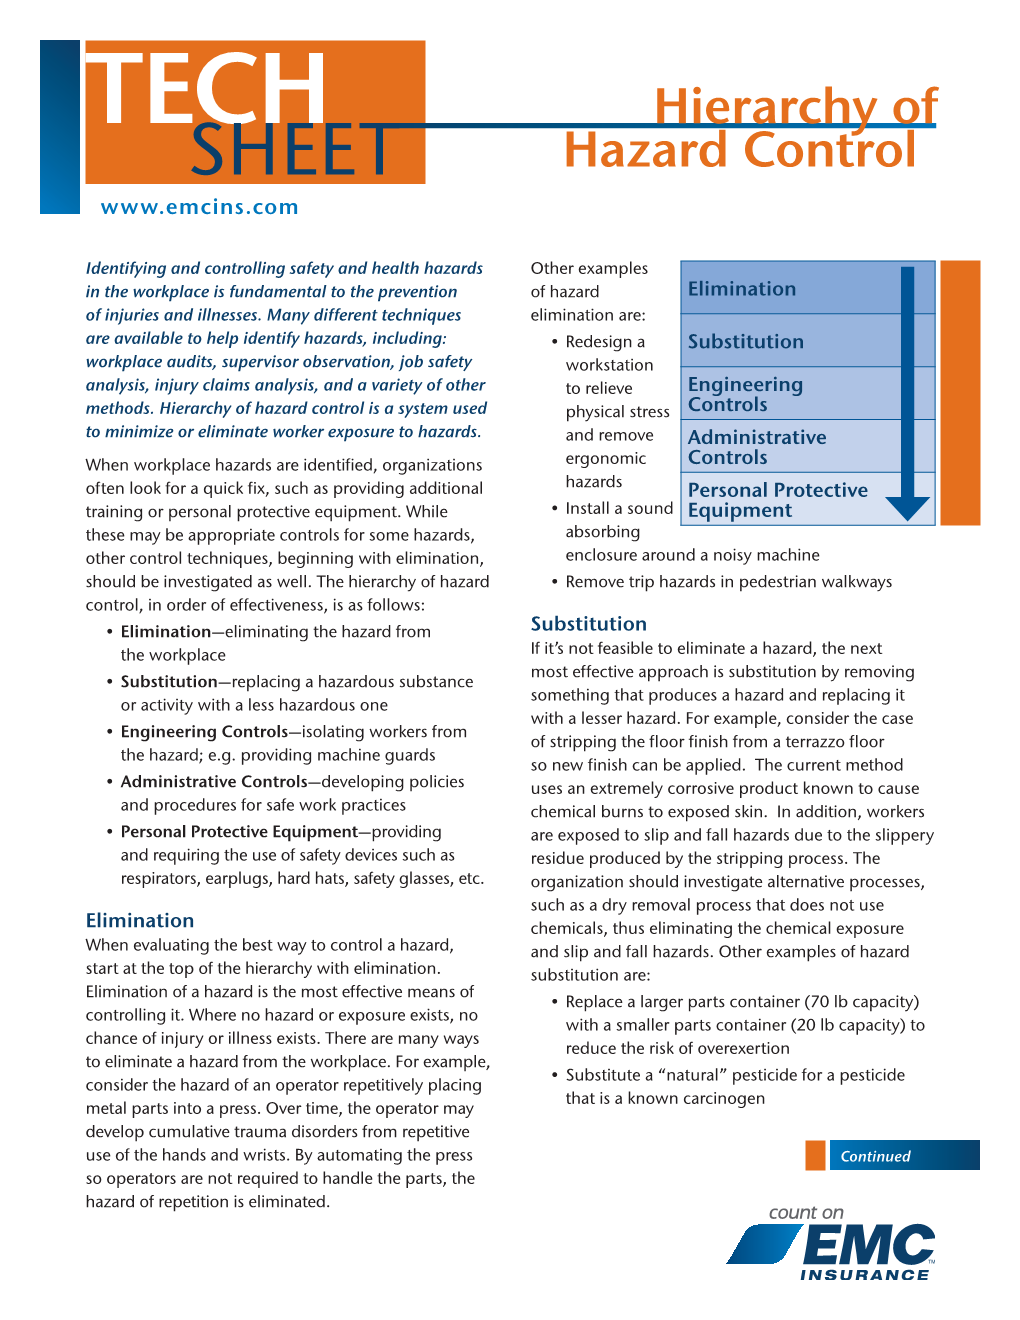 Hierarchy of Hazard Control